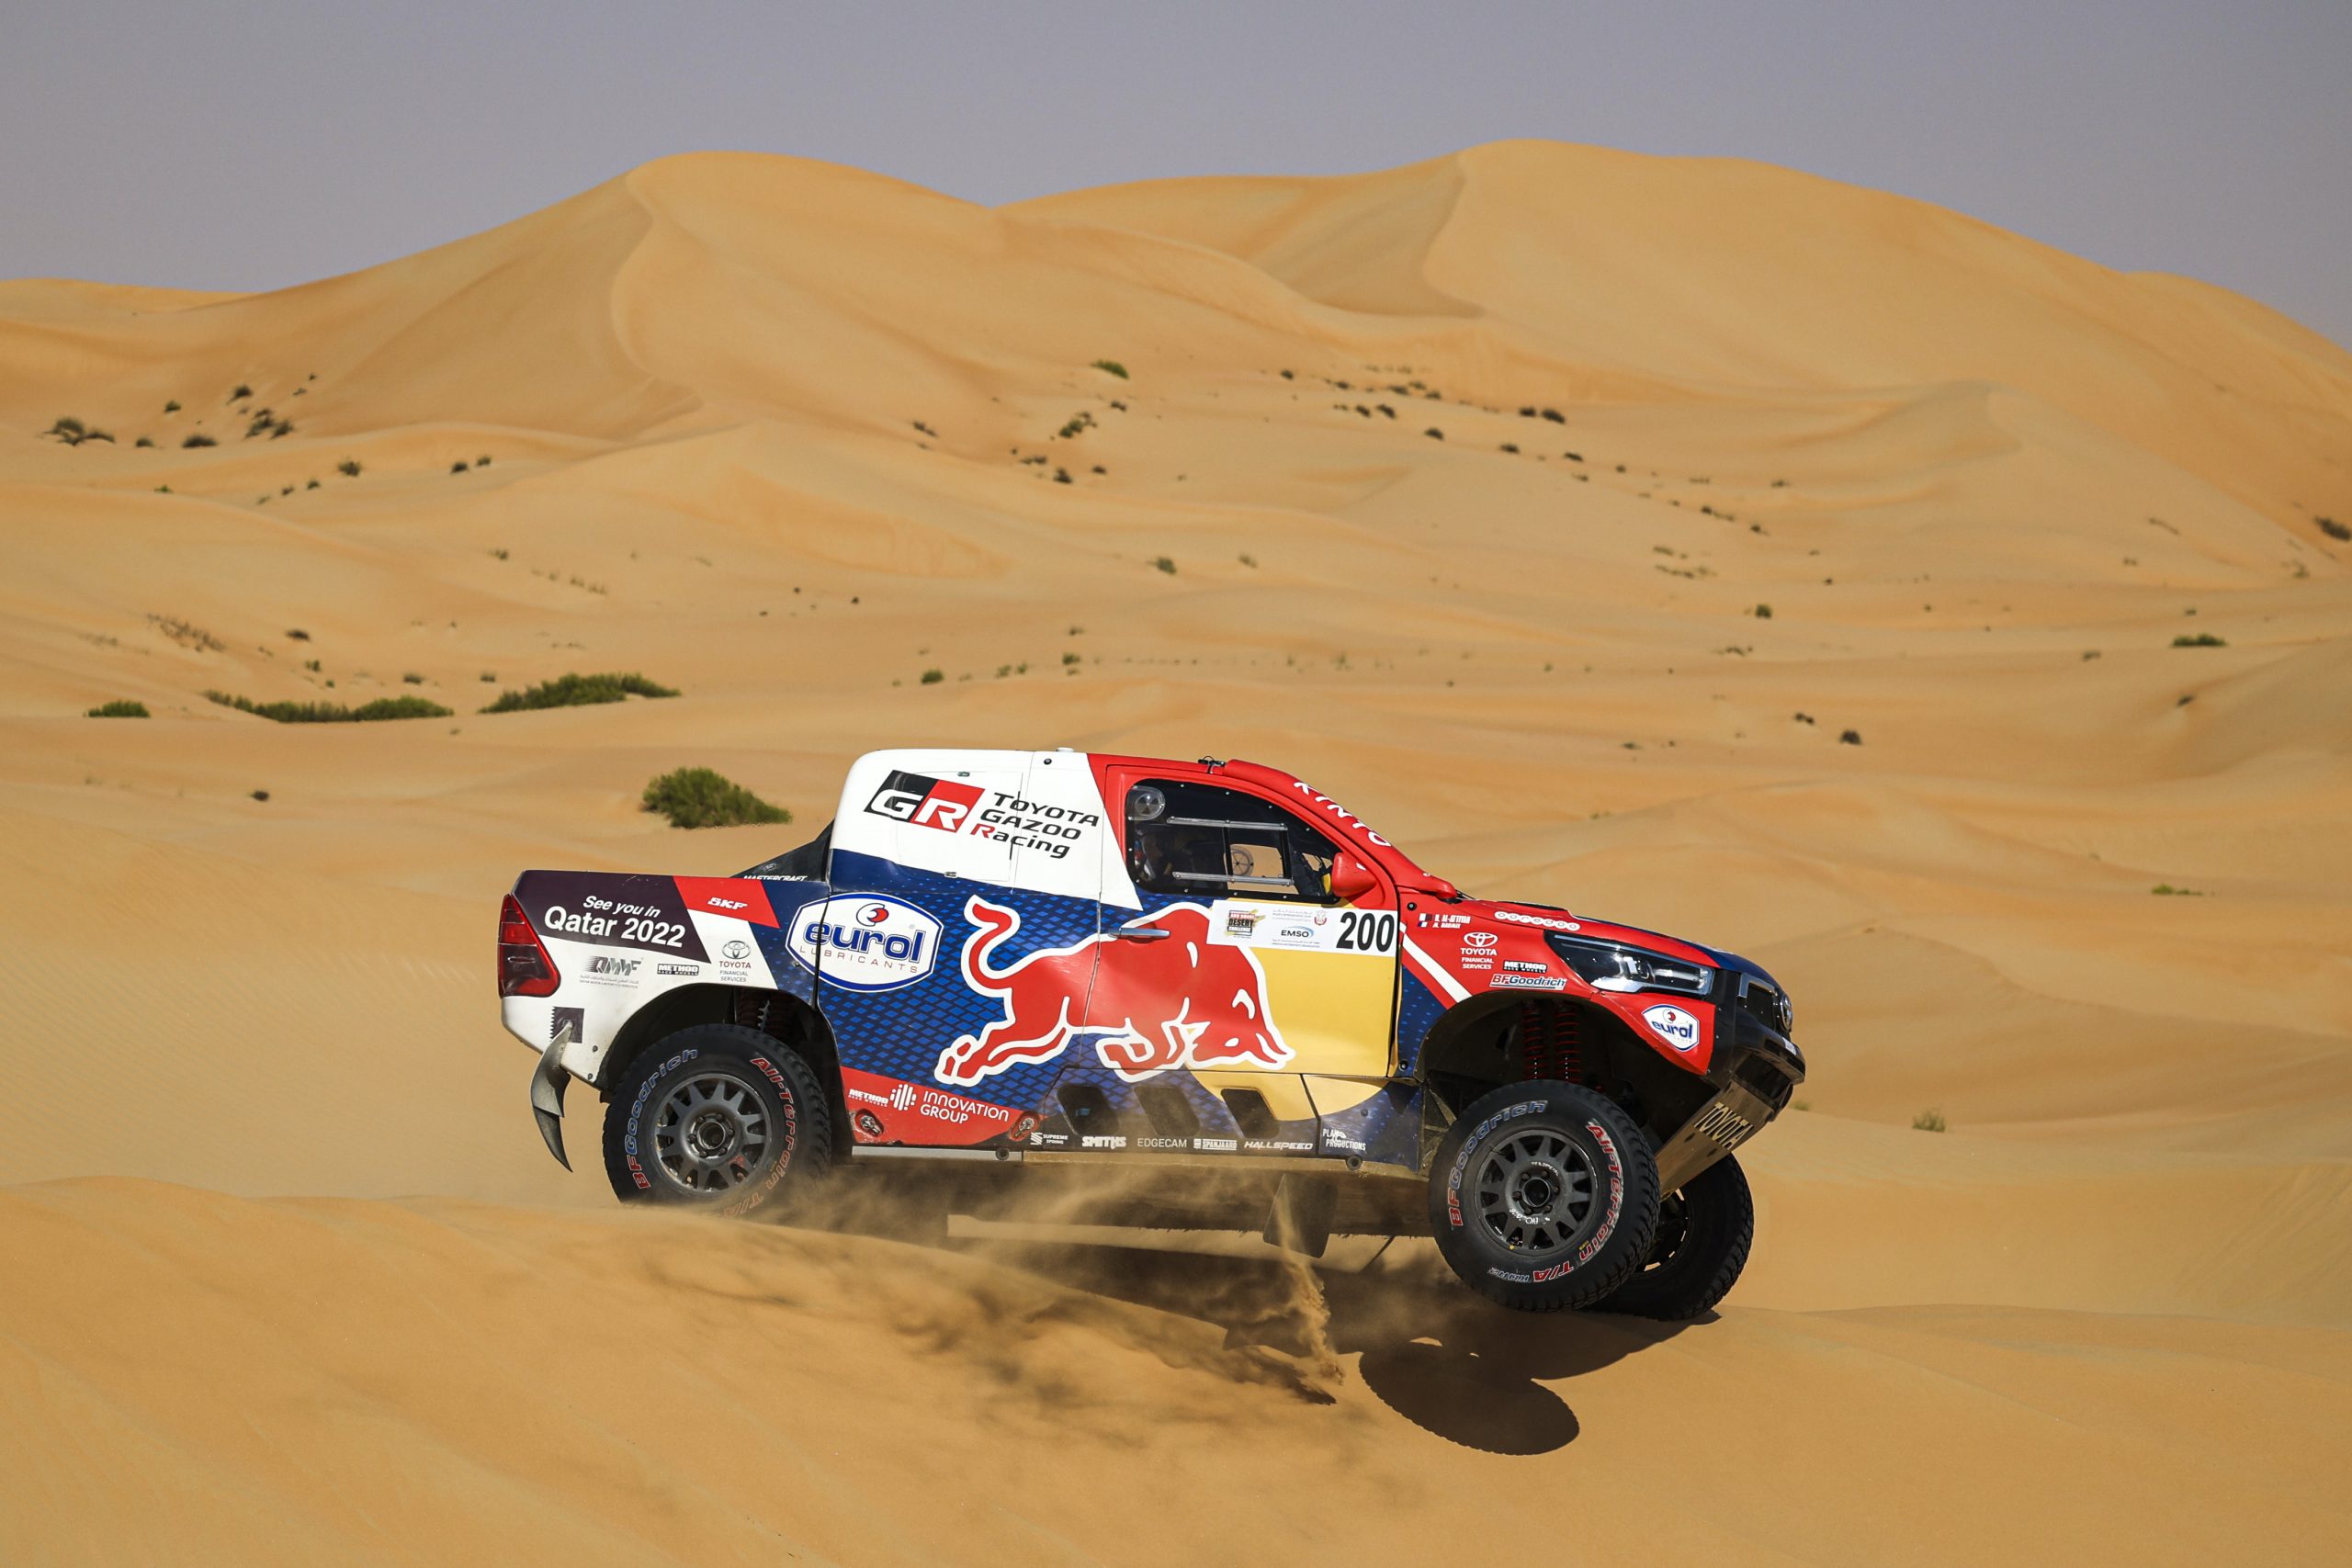 Qatar's Nasser Al Attiyah Leads Abu Dhabi Desert Challenge